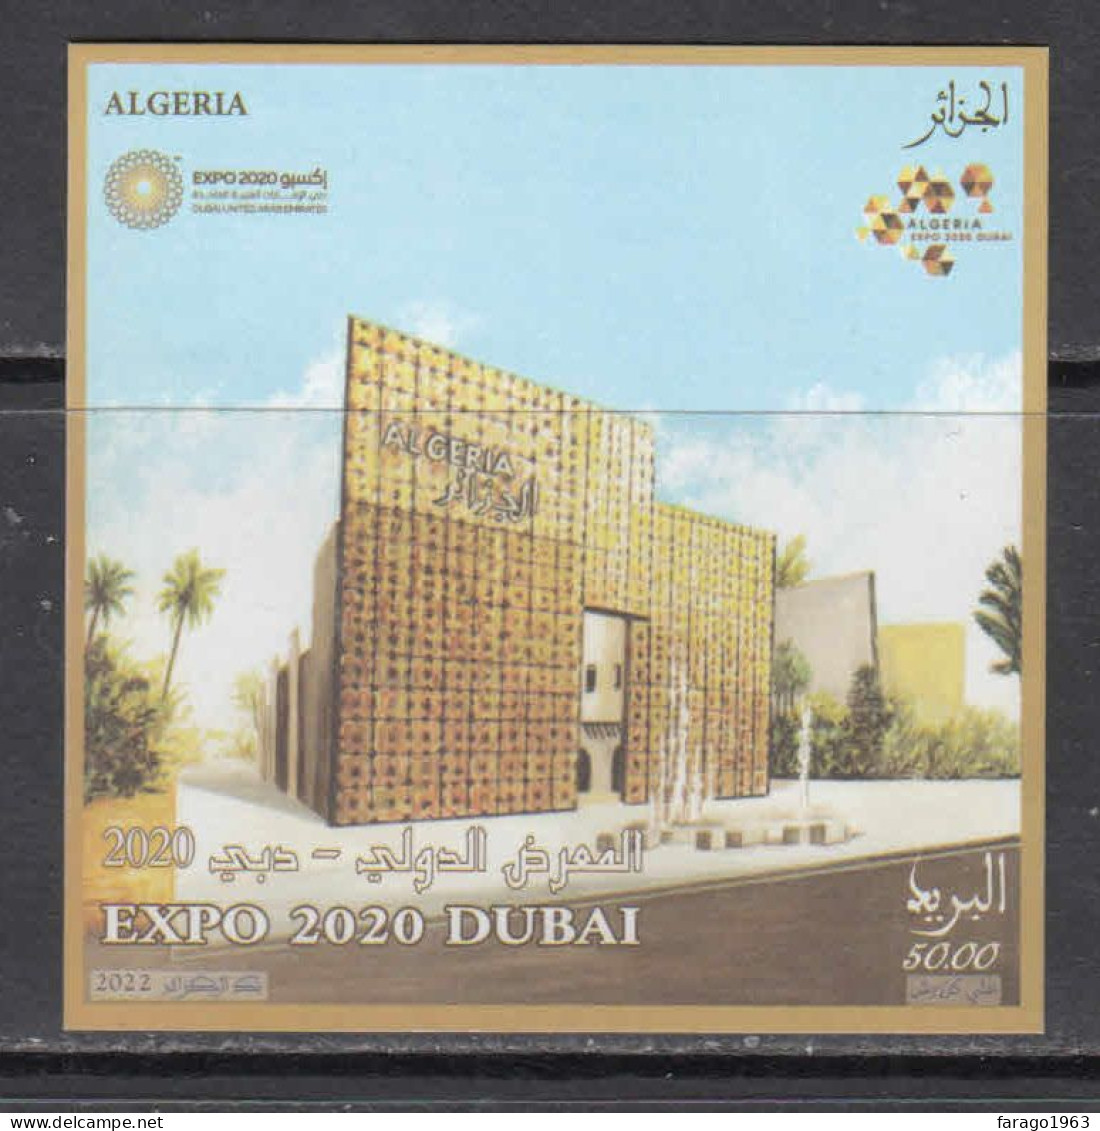 2022 Algeria Algerie Expo 2020 Dubai Souvenir Sheet MNH - Algeria (1962-...)